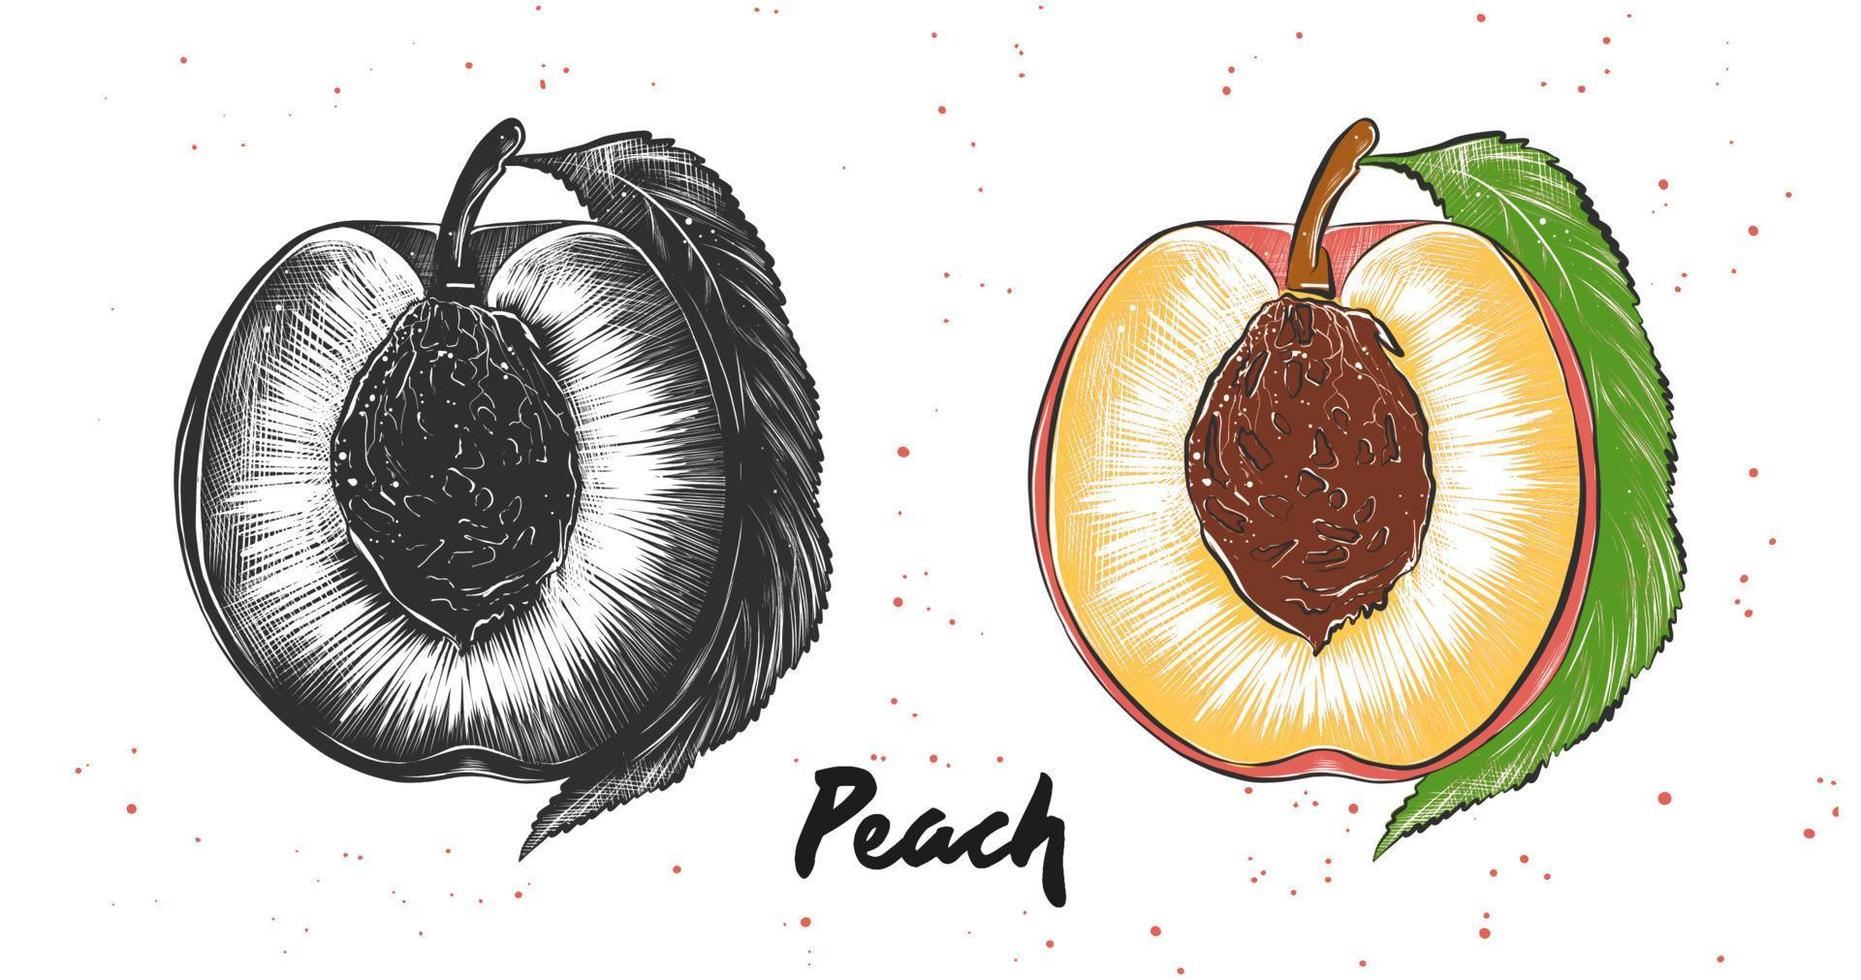 vektorgravierte Illustration für Poster, Dekoration und Druck. hand gezeichnete skizze von pfirsich in monochrom und bunt. detaillierte vegetarische Essenszeichnung. vektor